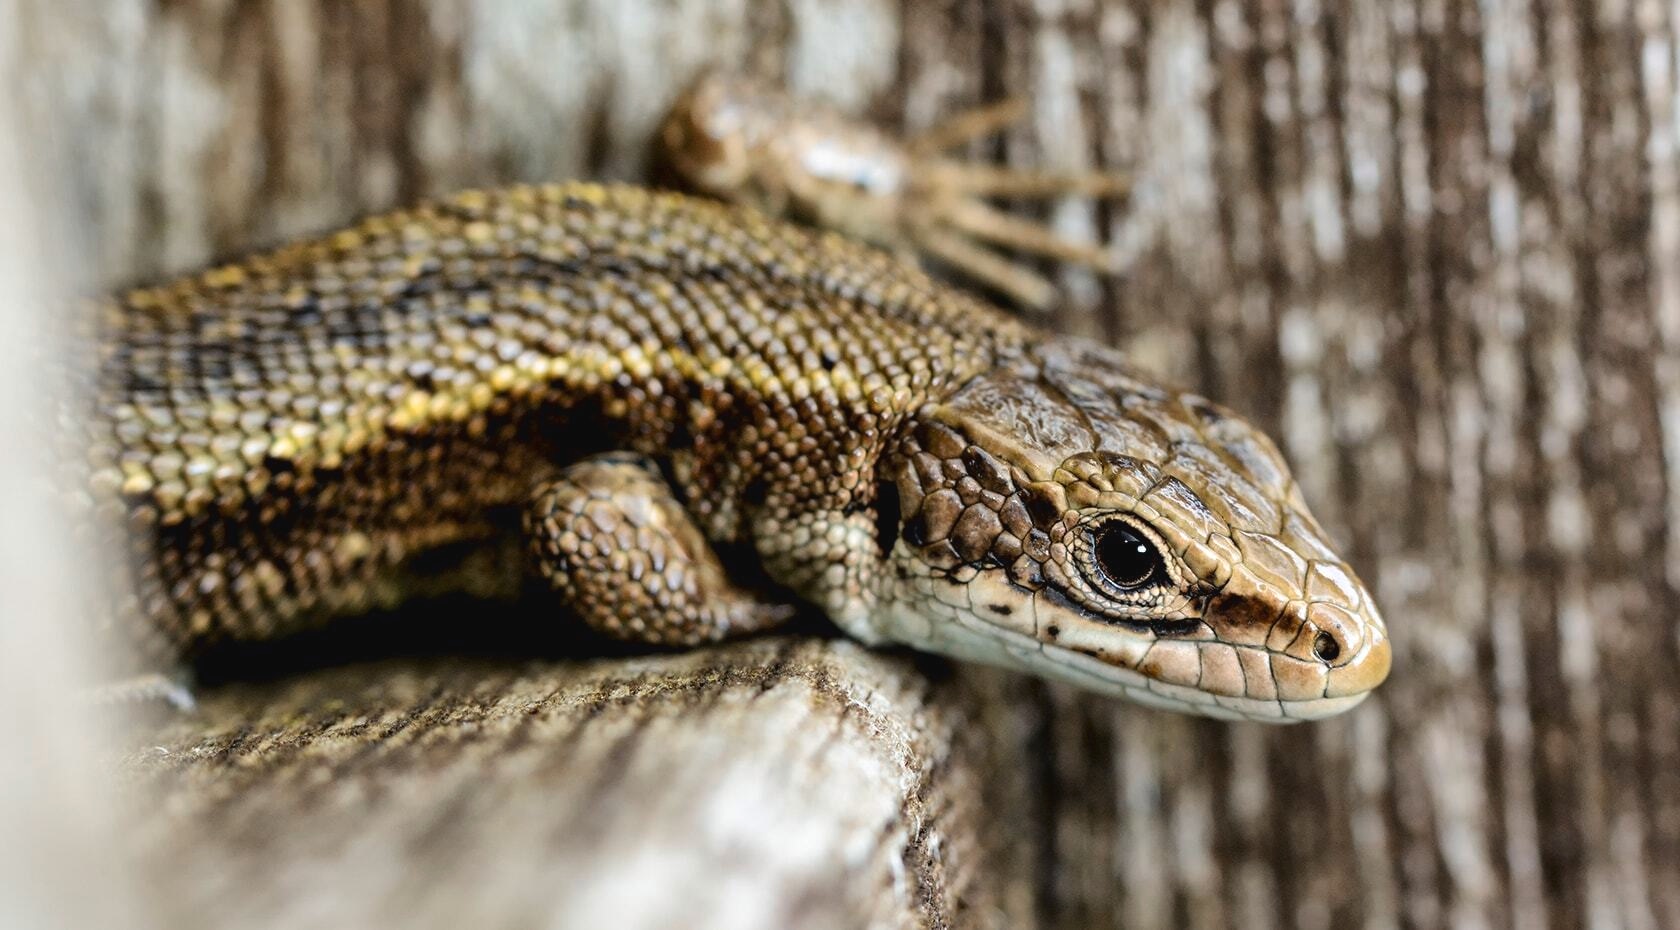 A lizard on a wooden surface